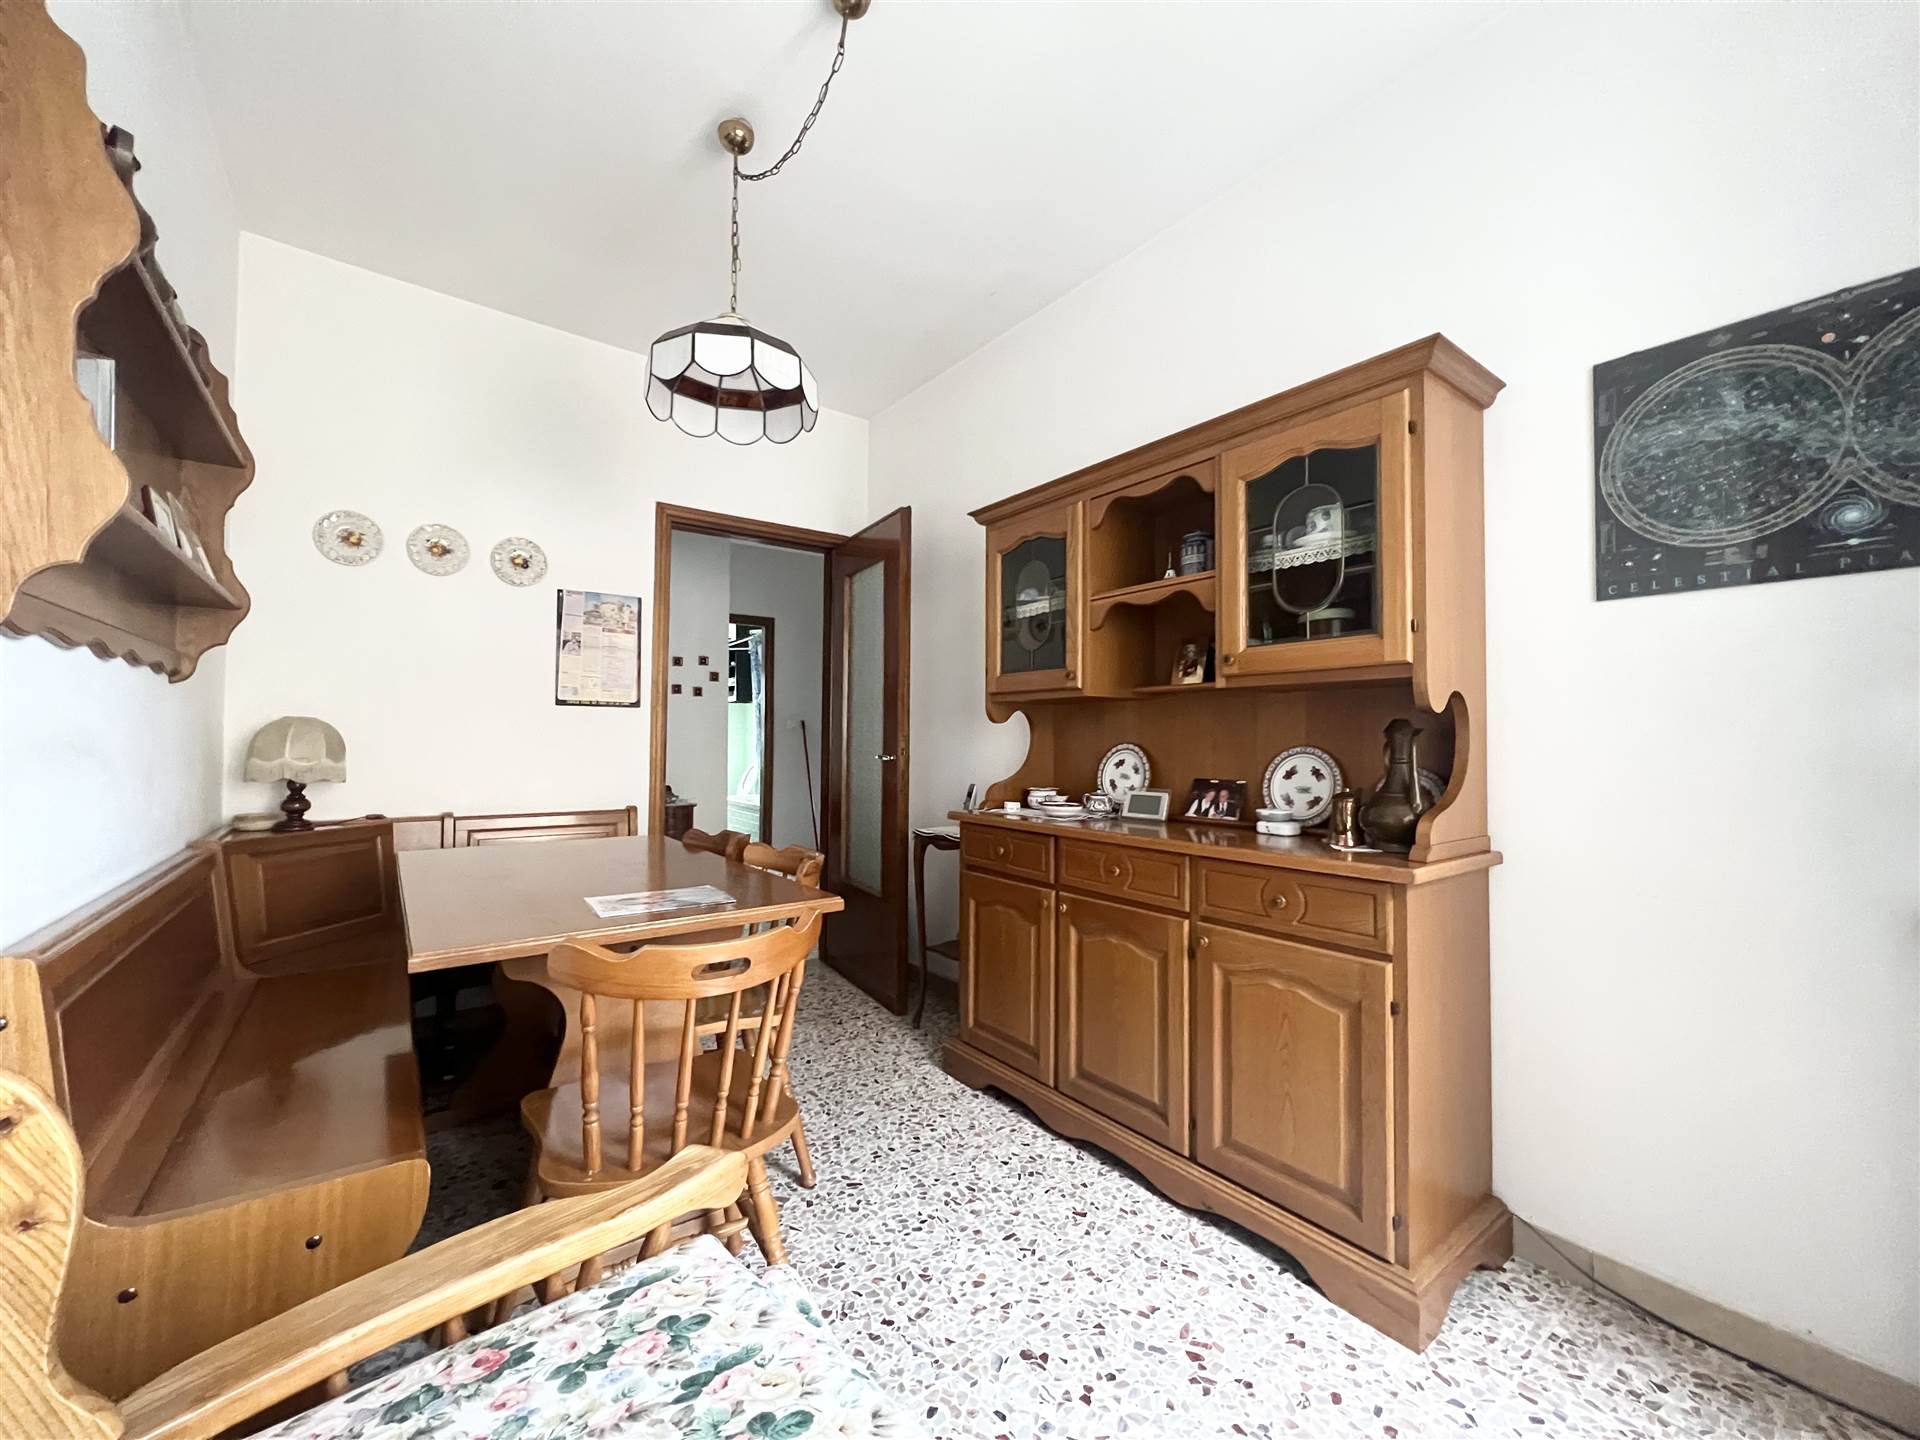 Appartamento in vendita a Canonica d'Adda, 4 locali, prezzo € 88.000 | PortaleAgenzieImmobiliari.it